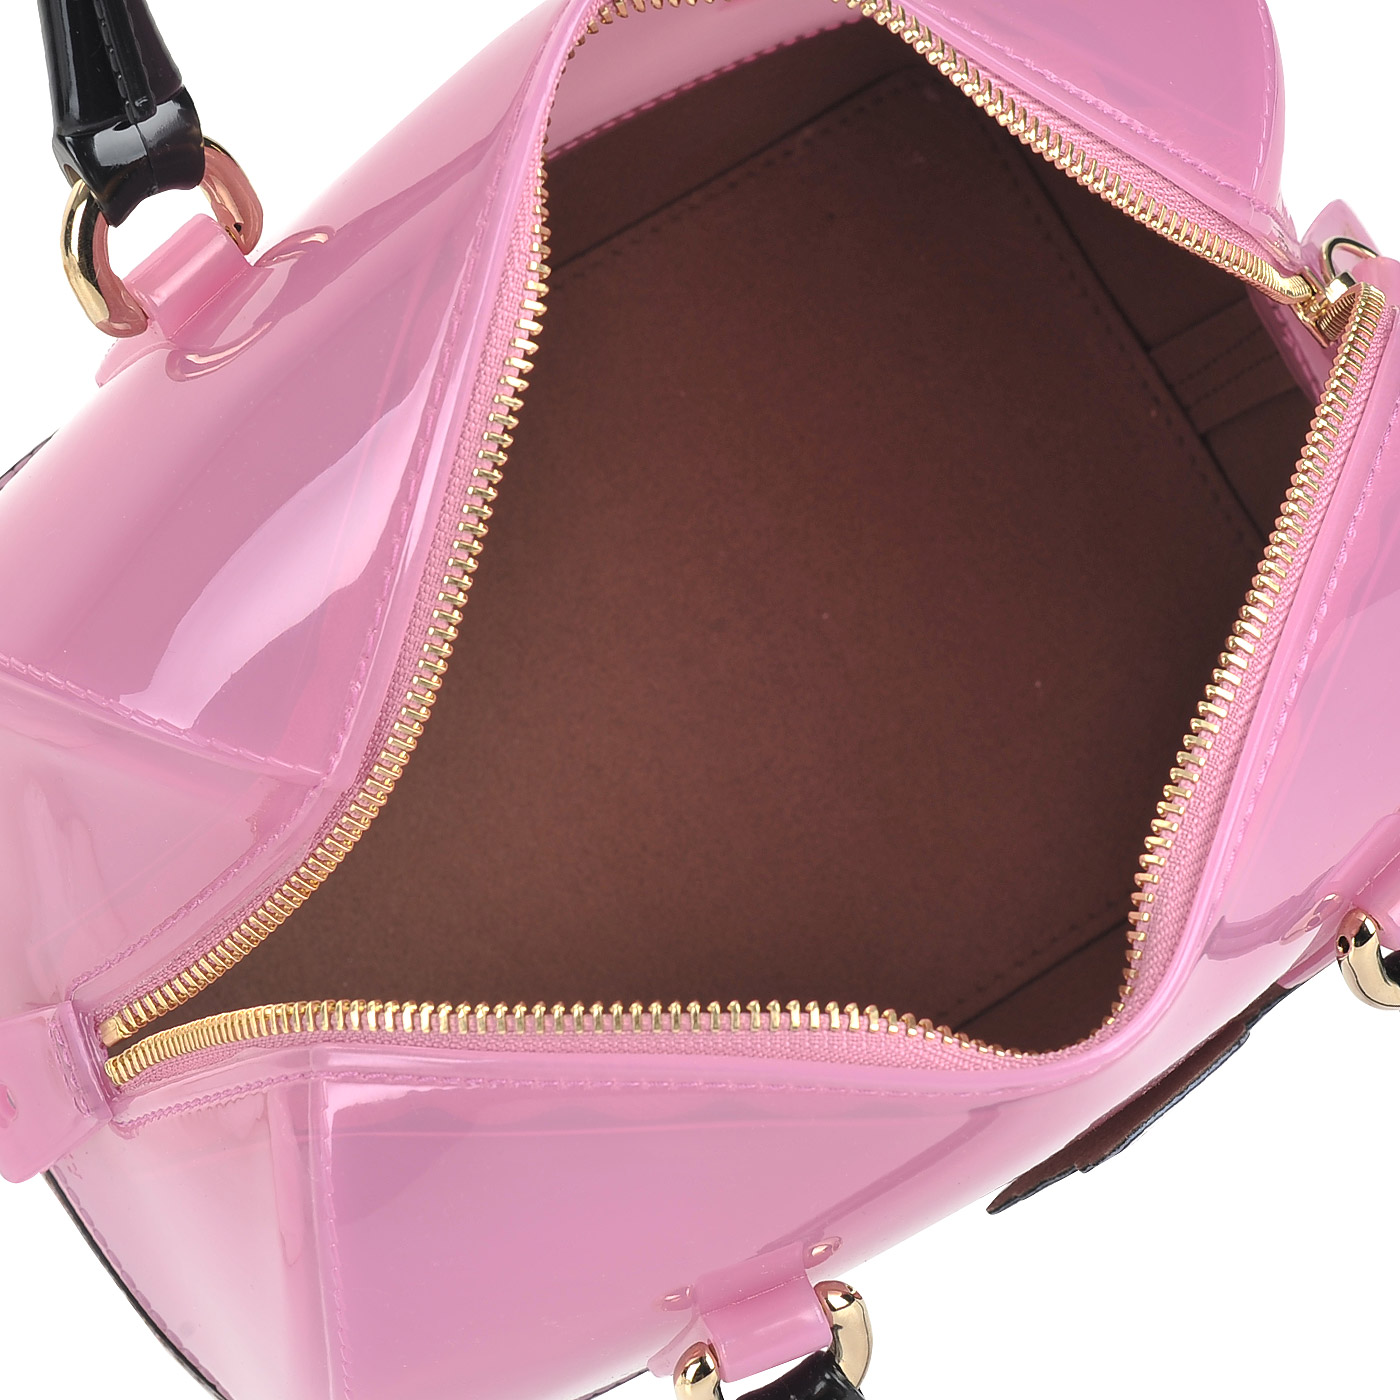 Женская сумка с цветным декором Furla Candy fantasy